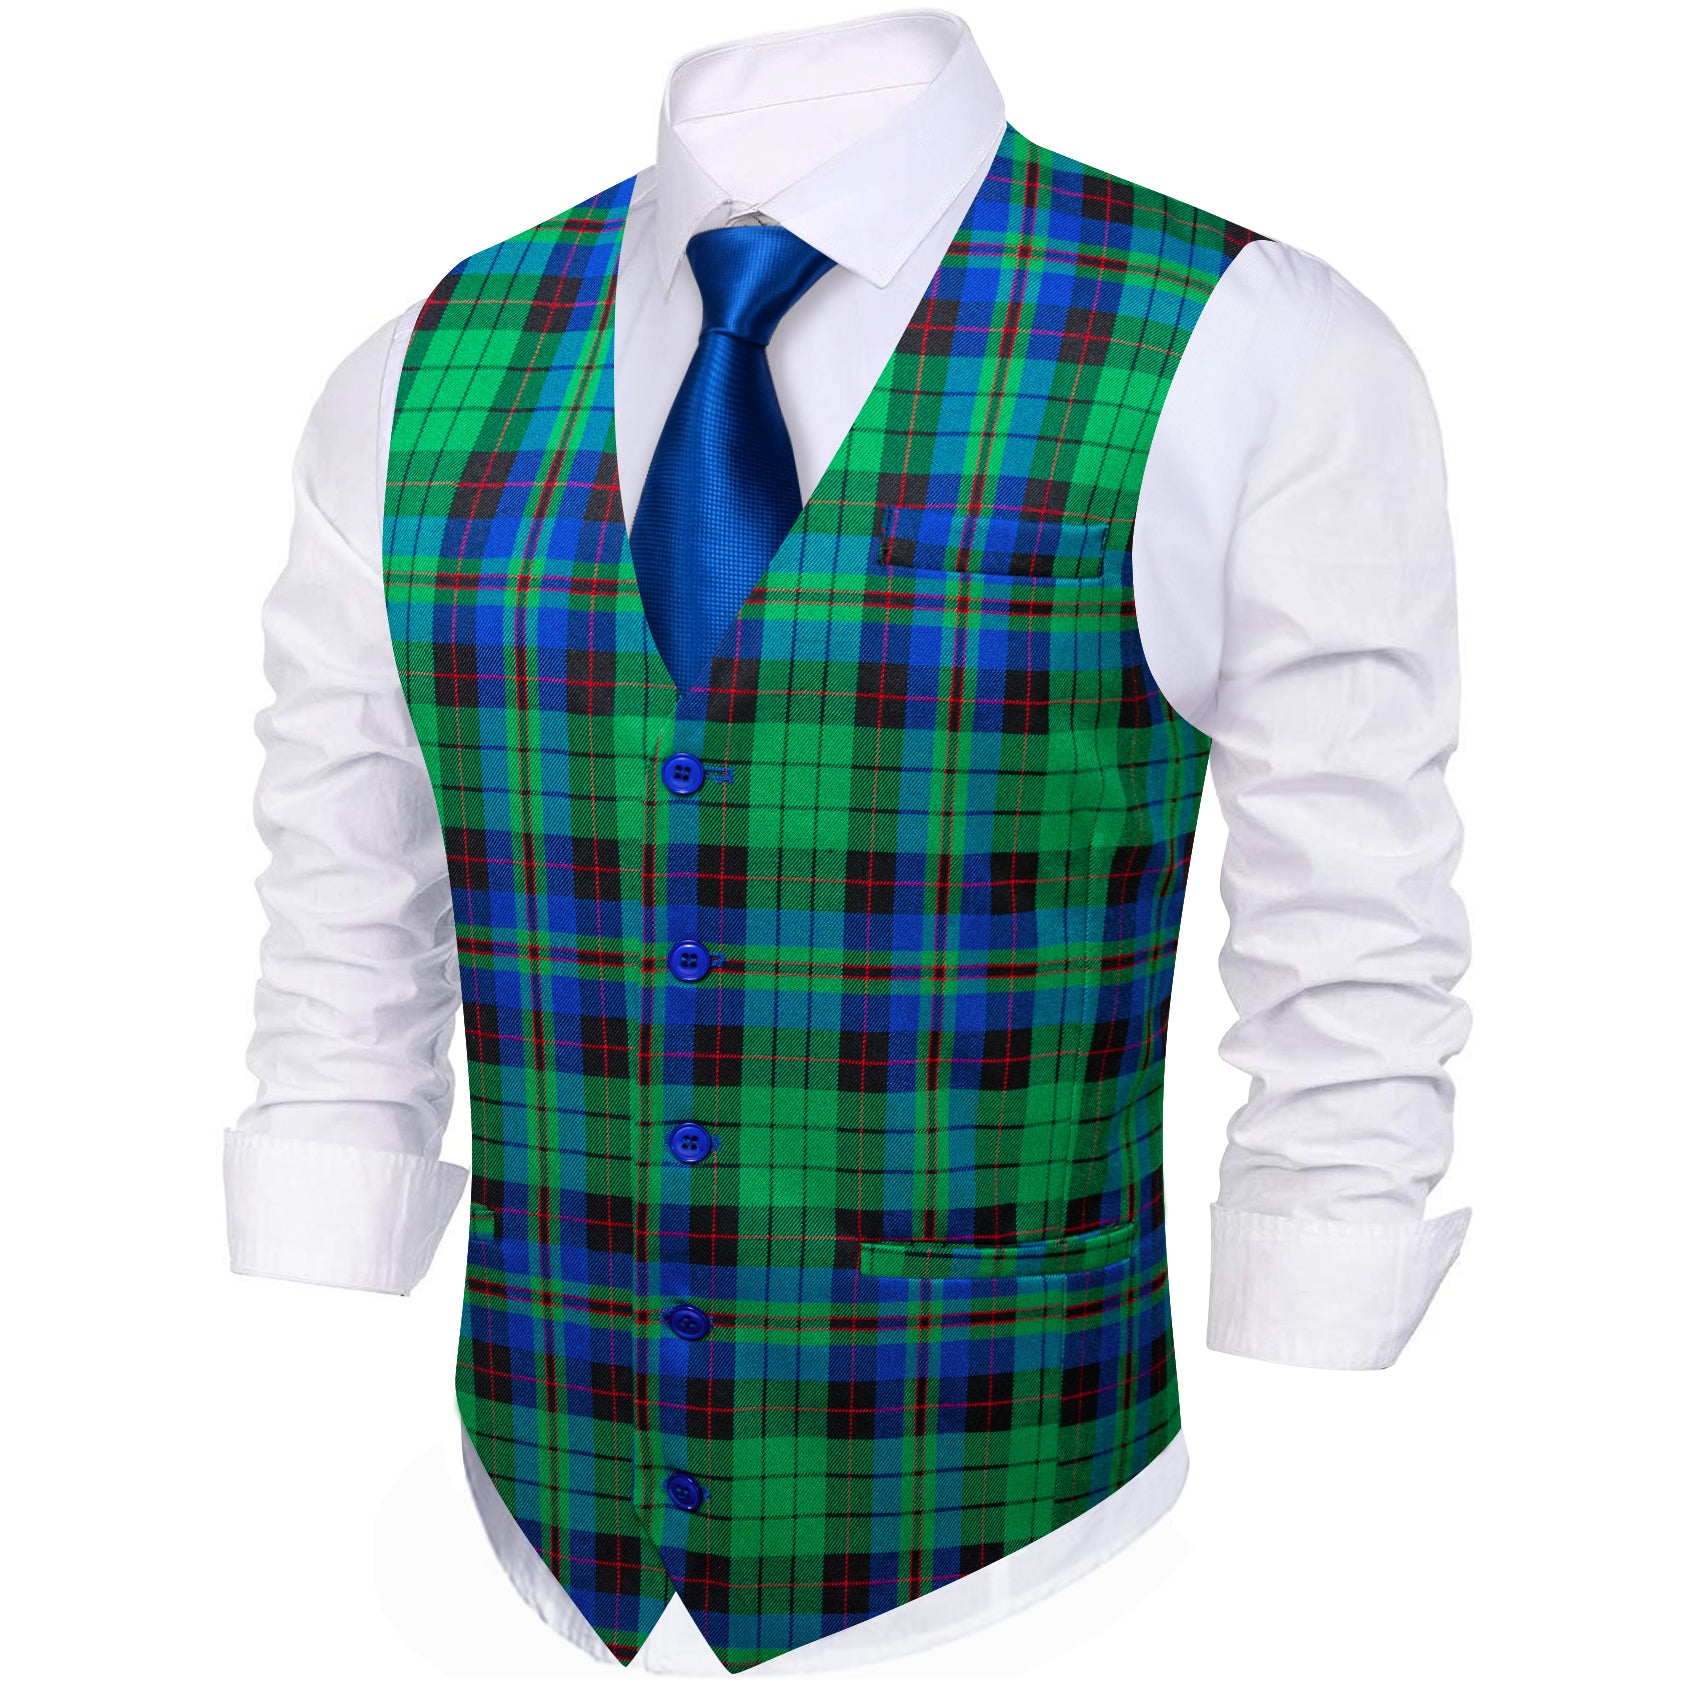 Barry.wang Cobalt Blue Green Plaid Vest Waistcoat Set